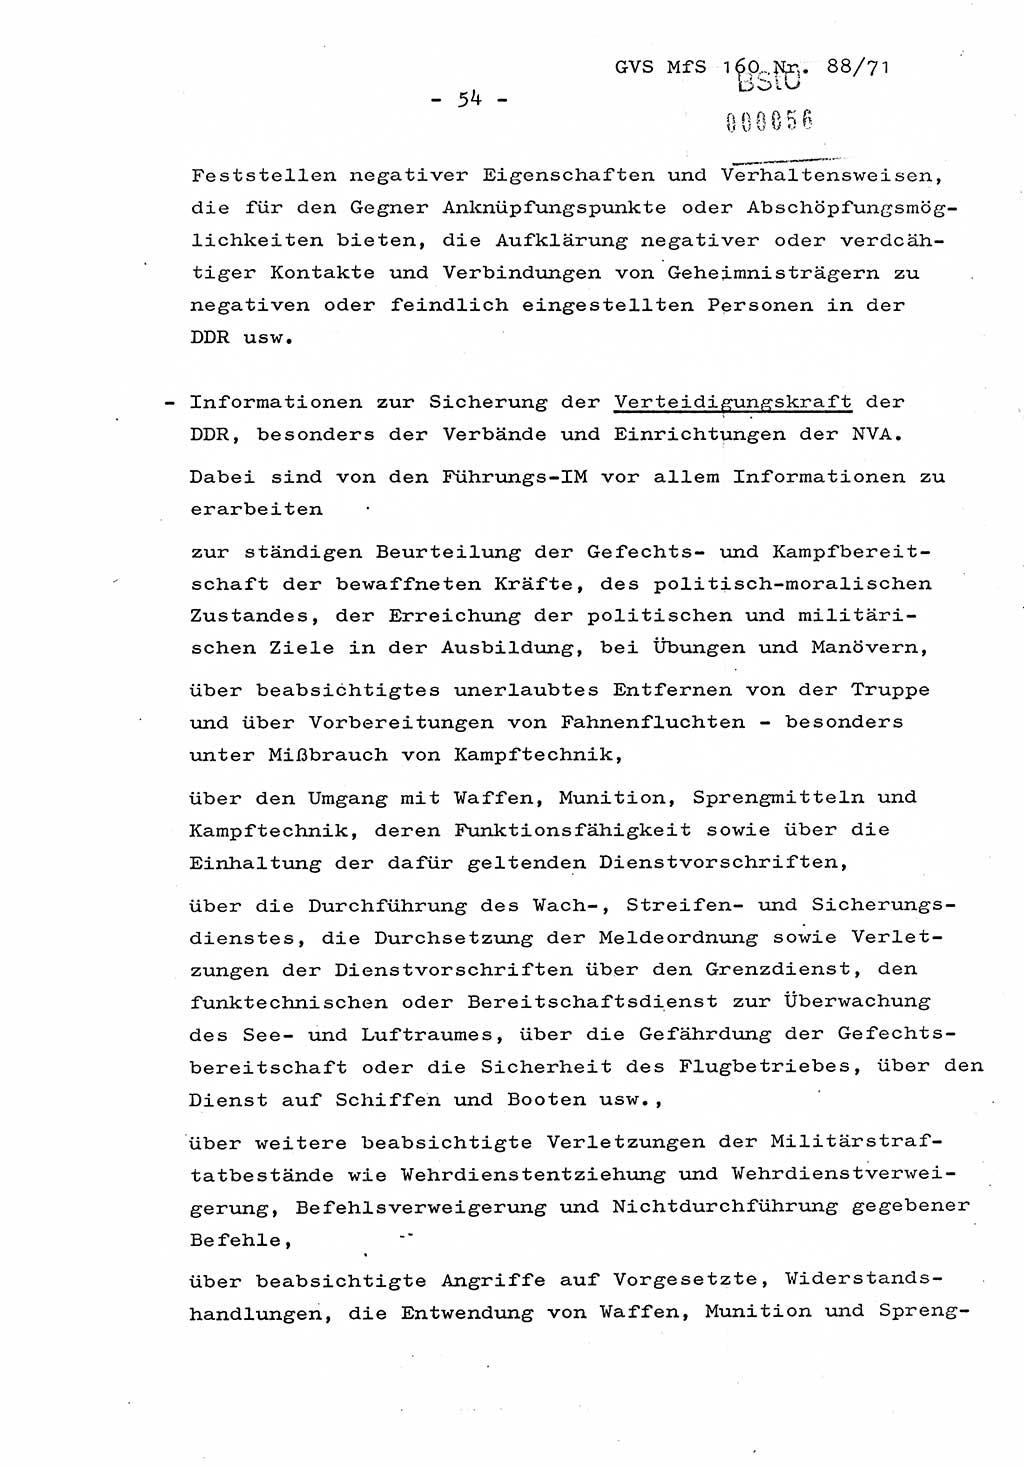 Dissertation Oberstleutnant Josef Schwarz (BV Schwerin), Major Fritz Amm (JHS), Hauptmann Peter Gräßler (JHS), Ministerium für Staatssicherheit (MfS) [Deutsche Demokratische Republik (DDR)], Juristische Hochschule (JHS), Geheime Verschlußsache (GVS) 160-88/71, Potsdam 1972, Seite 54 (Diss. MfS DDR JHS GVS 160-88/71 1972, S. 54)